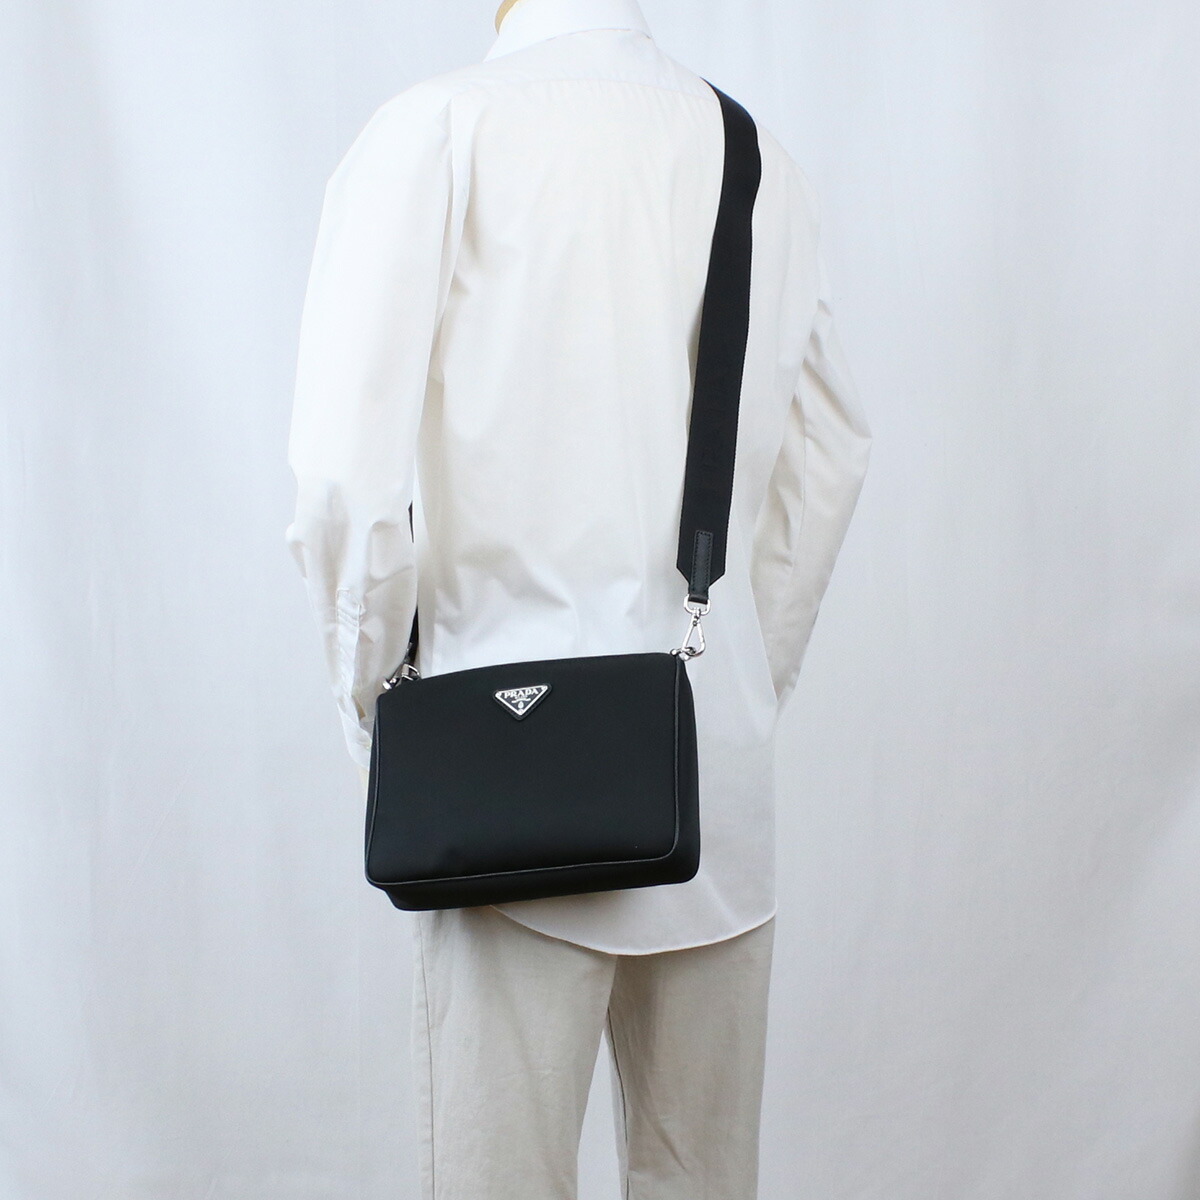 A品 プラダ ロングショルダーバッグ ショルダーバッグ リナイロン ネロ ユニセックス 男女兼用バッグ